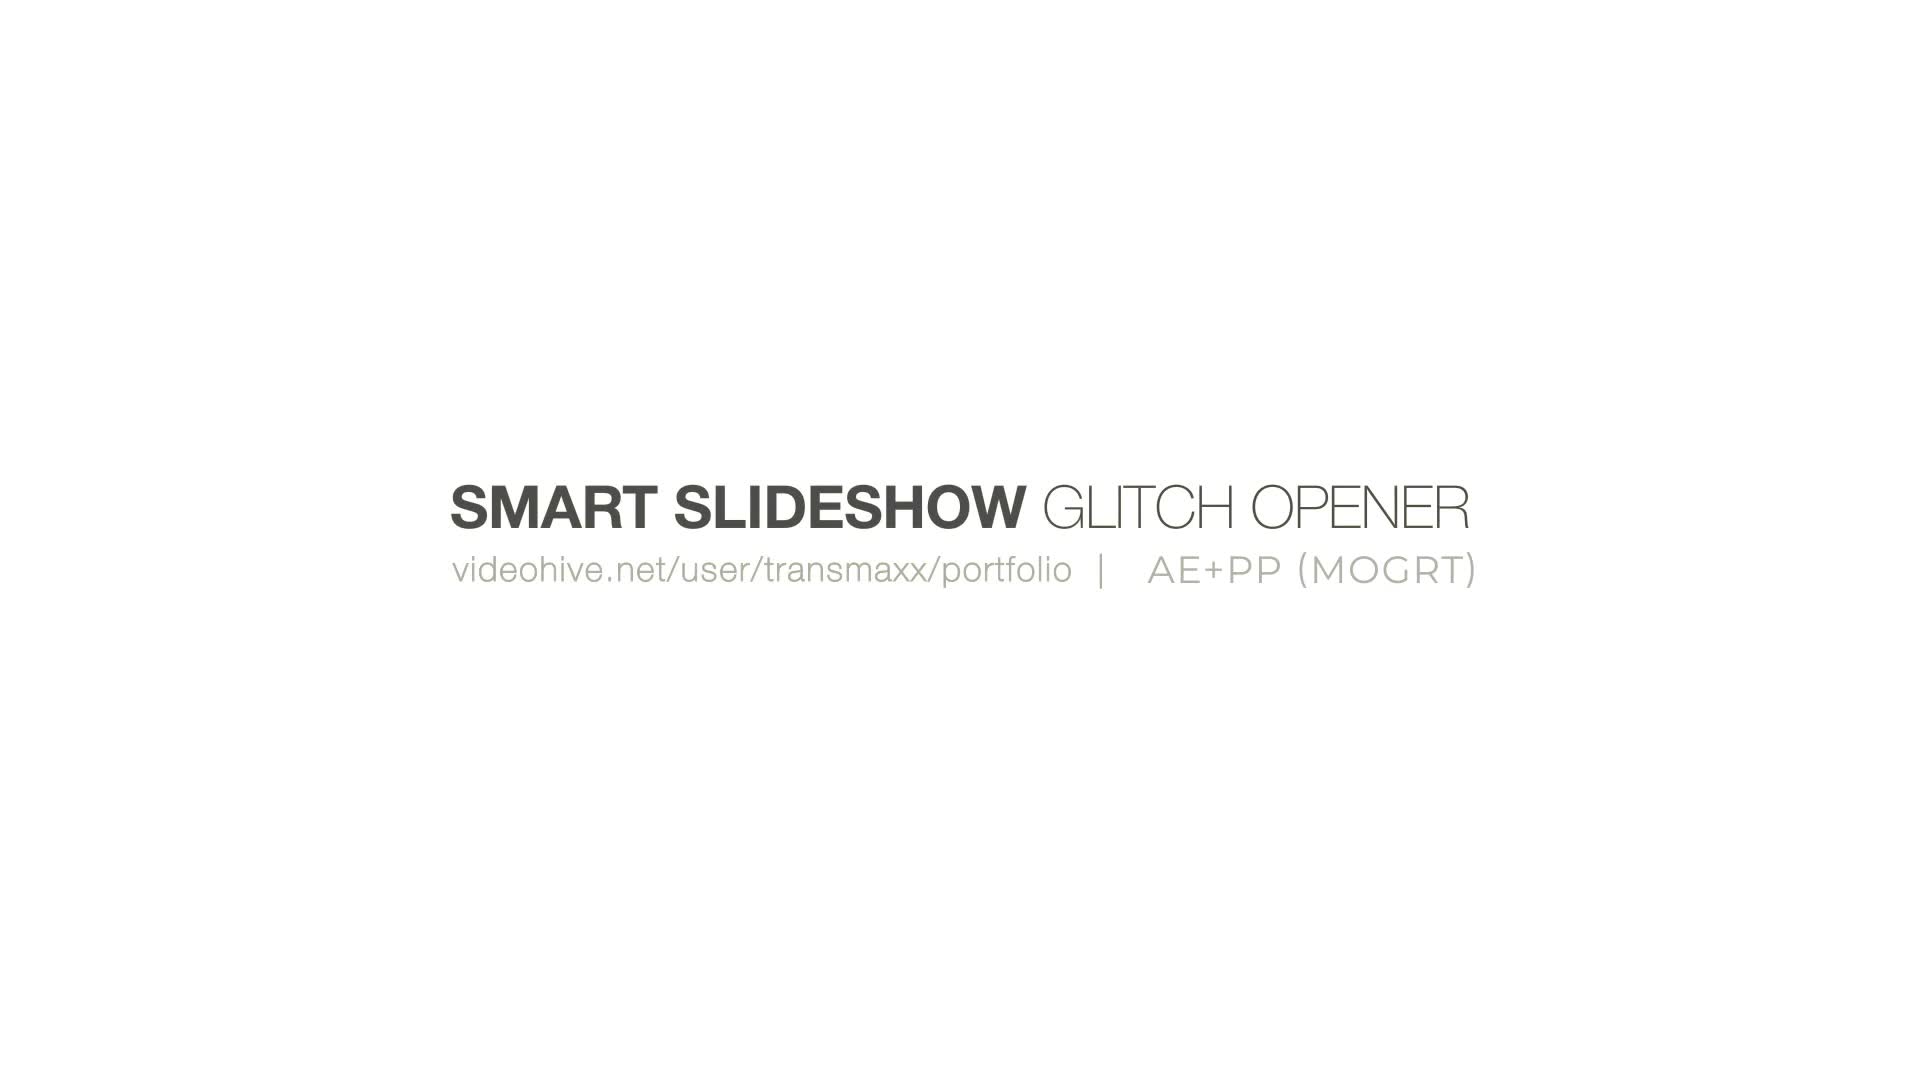 Smart Slideshow Glitch Opener Videohive 28340149 Premiere Pro Image 1